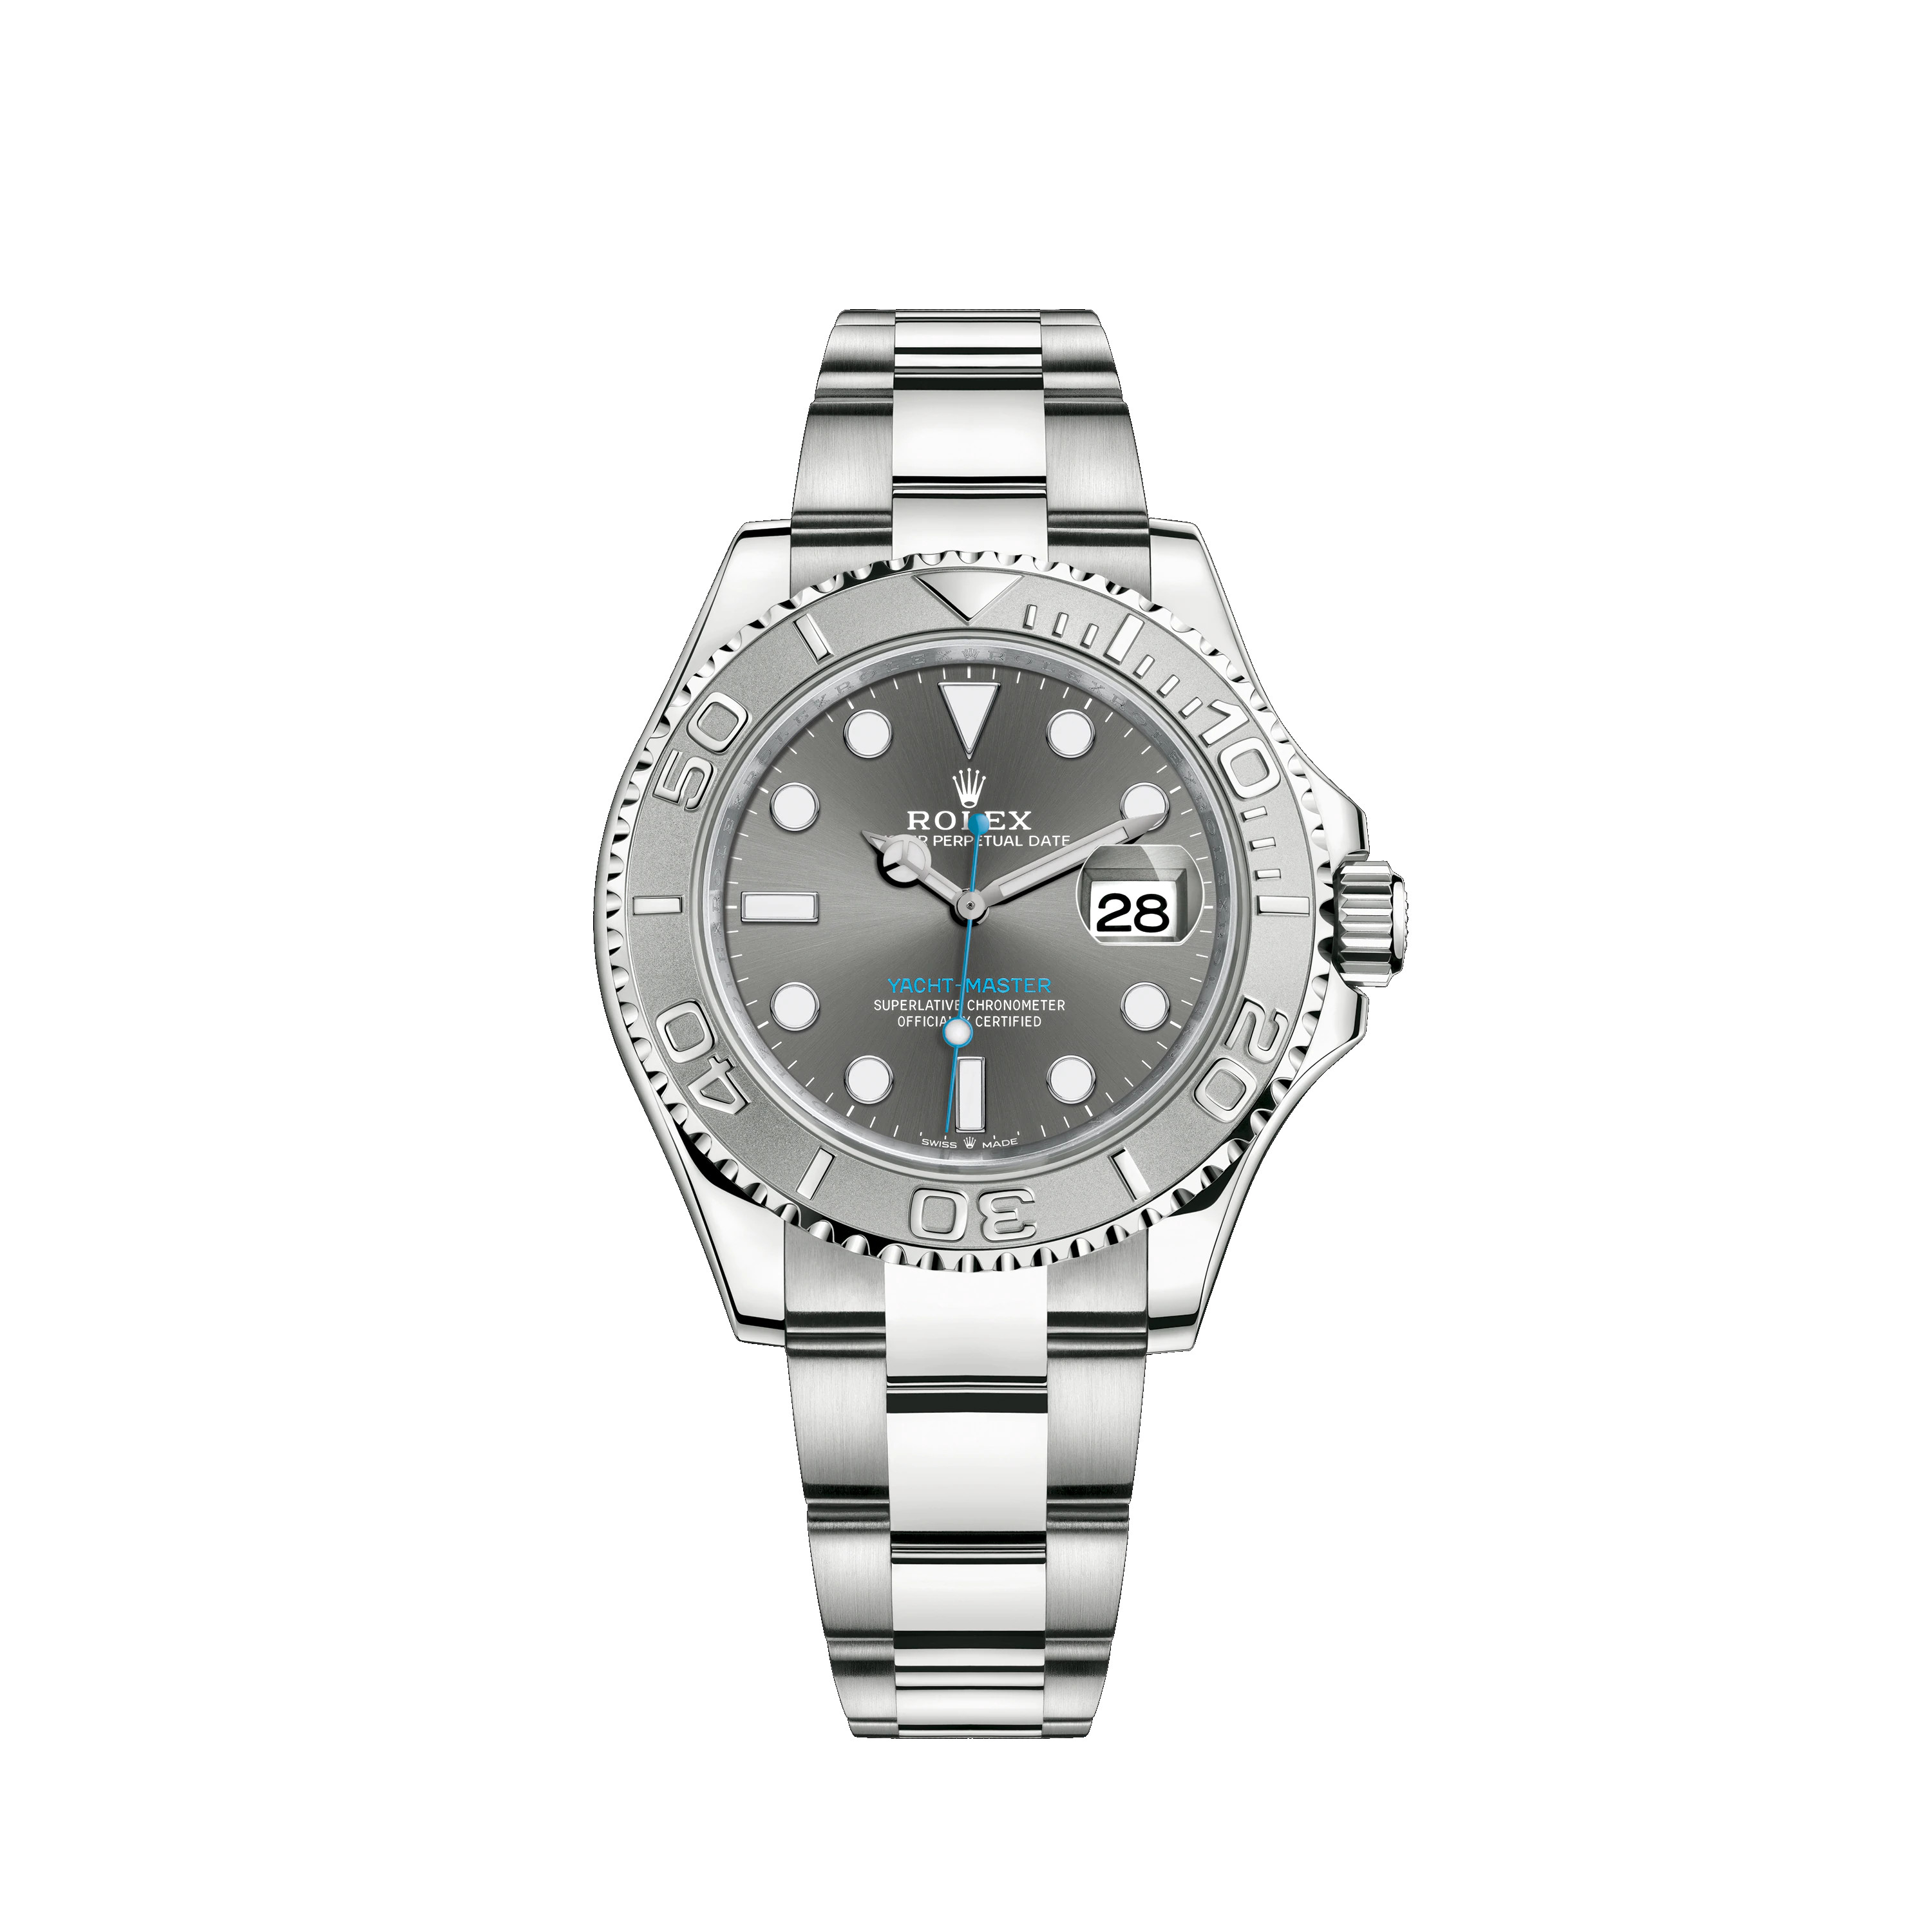 Yacht-Master 126622 Oystersteel & Platinum Watch (Rhodium)